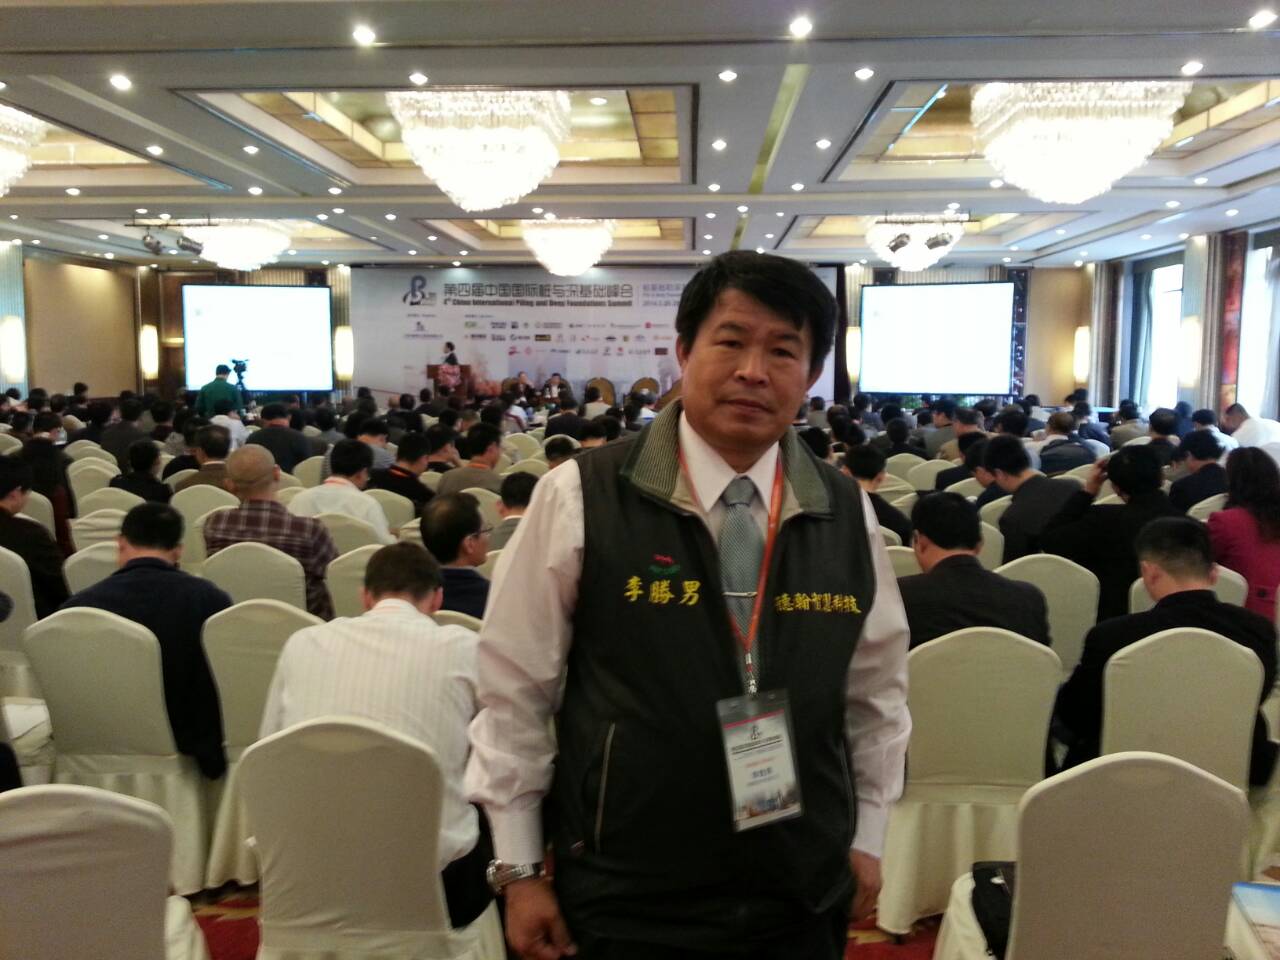 李胜男副总经理于峰会上发表最新DH-PHC技术